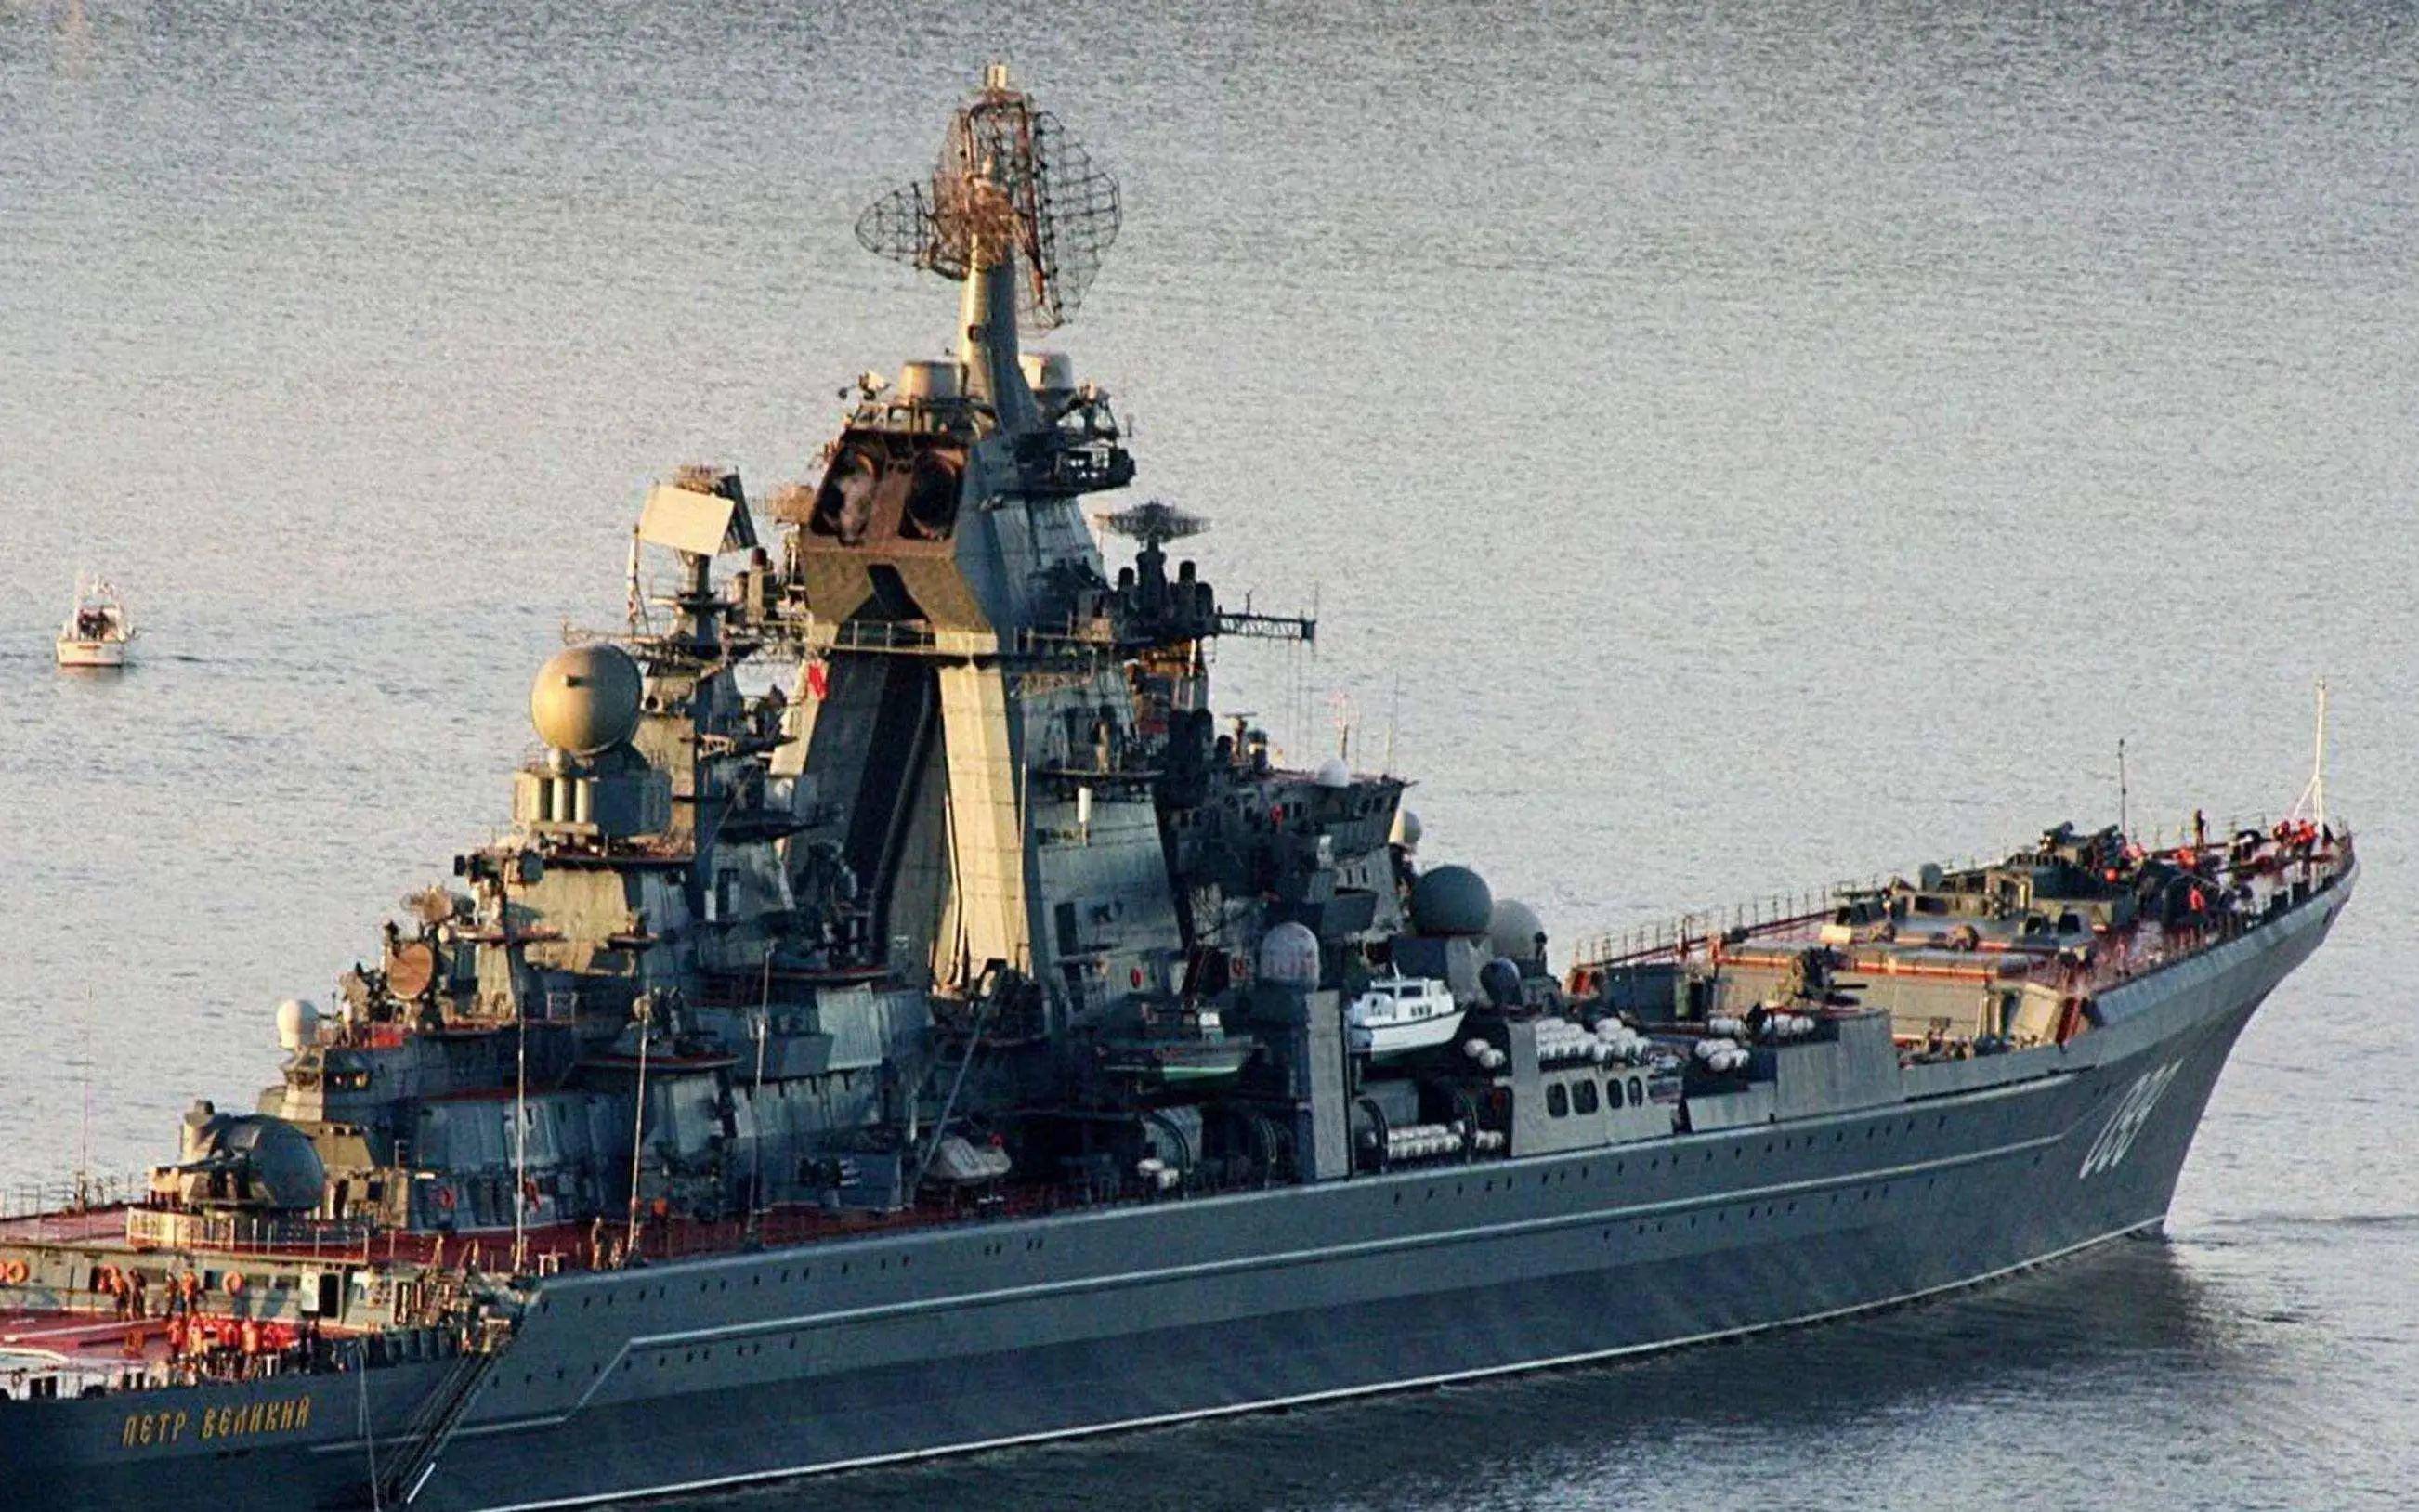 原创彼得大帝号核动力巡洋舰已经落后俄罗斯为何还把它当主力用